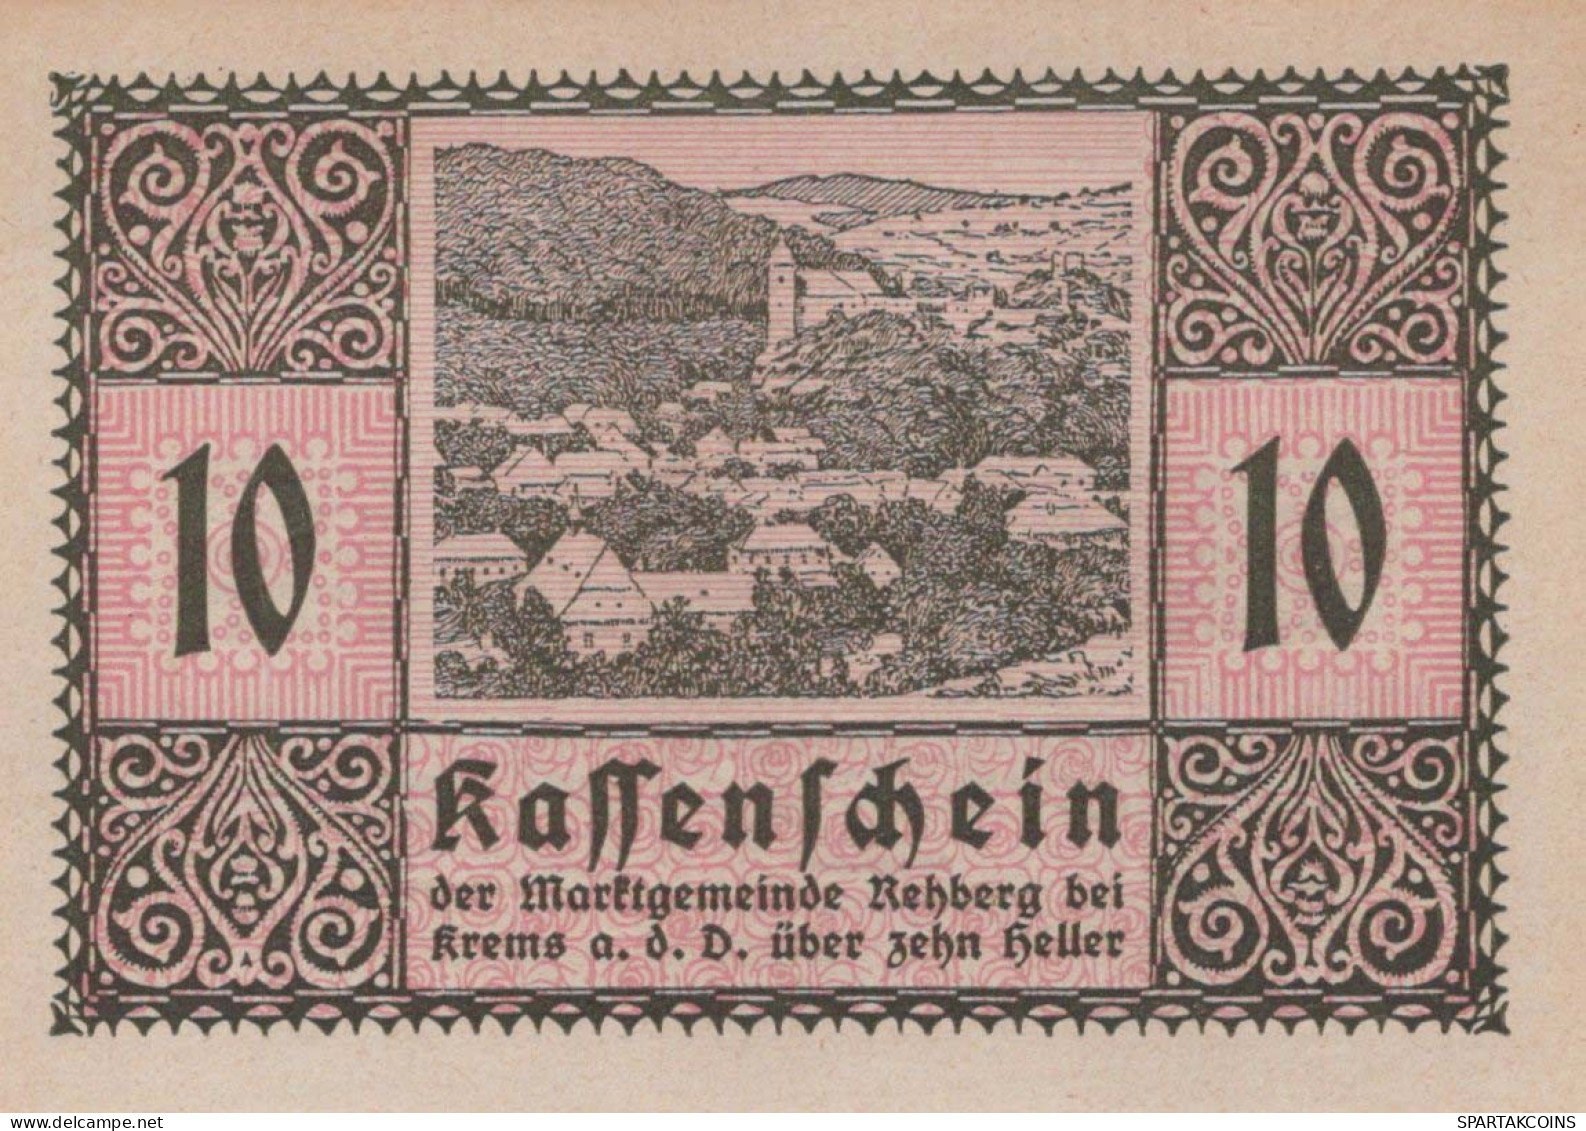 10 HELLER 1920 Stadt REHBERG BEI KREMS AN DER DONAU Niedrigeren Österreich Notgeld Papiergeld Banknote #PG799 - Lokale Ausgaben